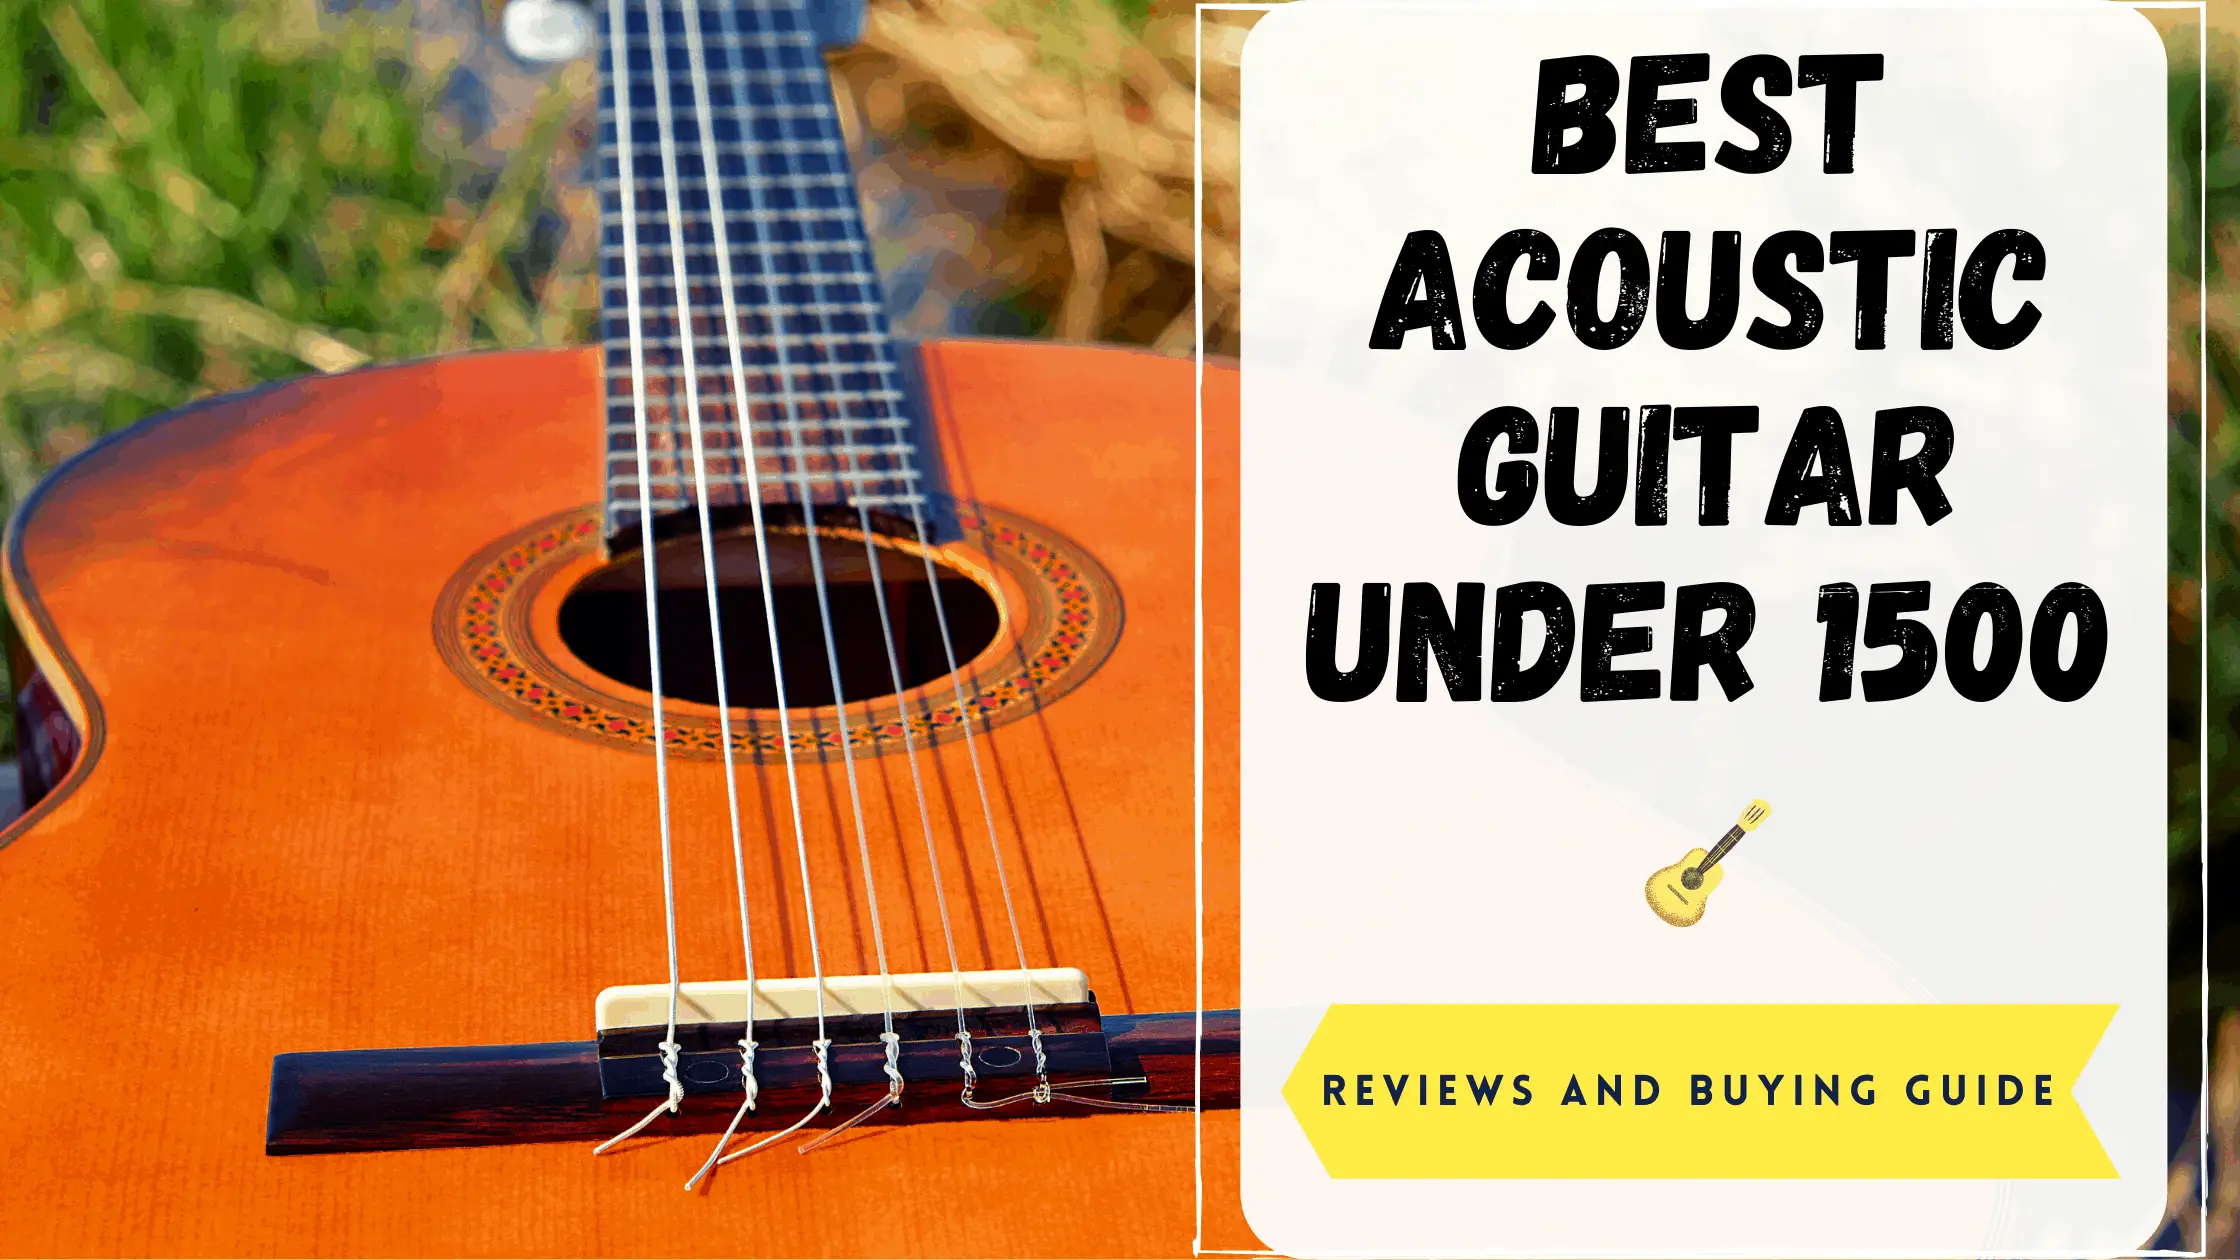 Best Acoustic Guitar Under 1500